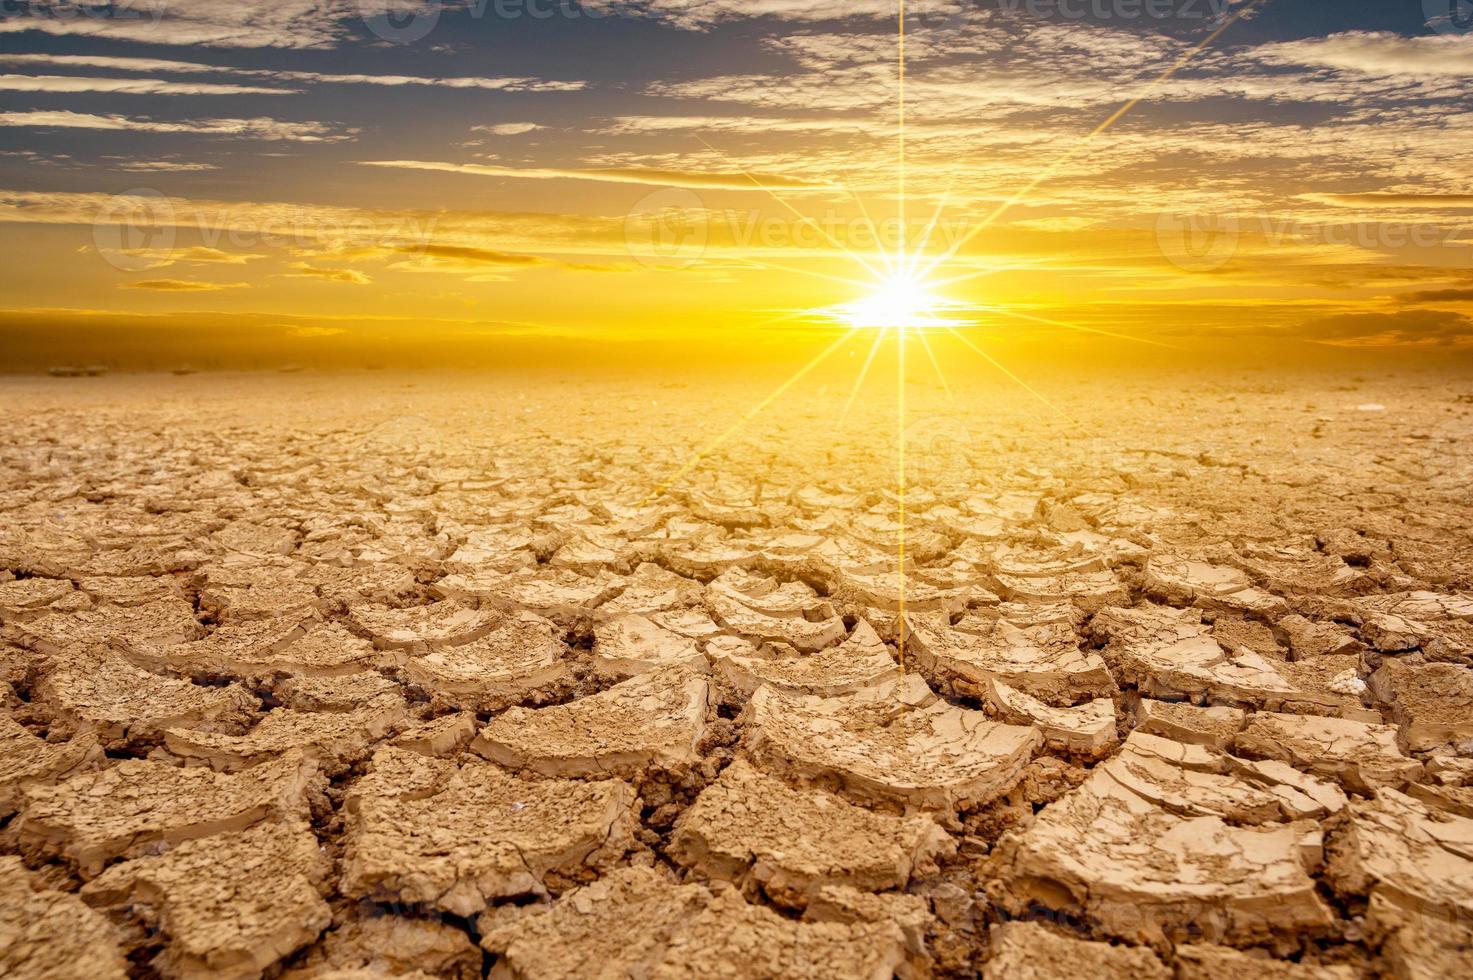 árido suelo arcilloso sol desierto gusano global concepto agrietado tierra quemada suelo sequía paisaje desértico espectacular puesta de sol foto